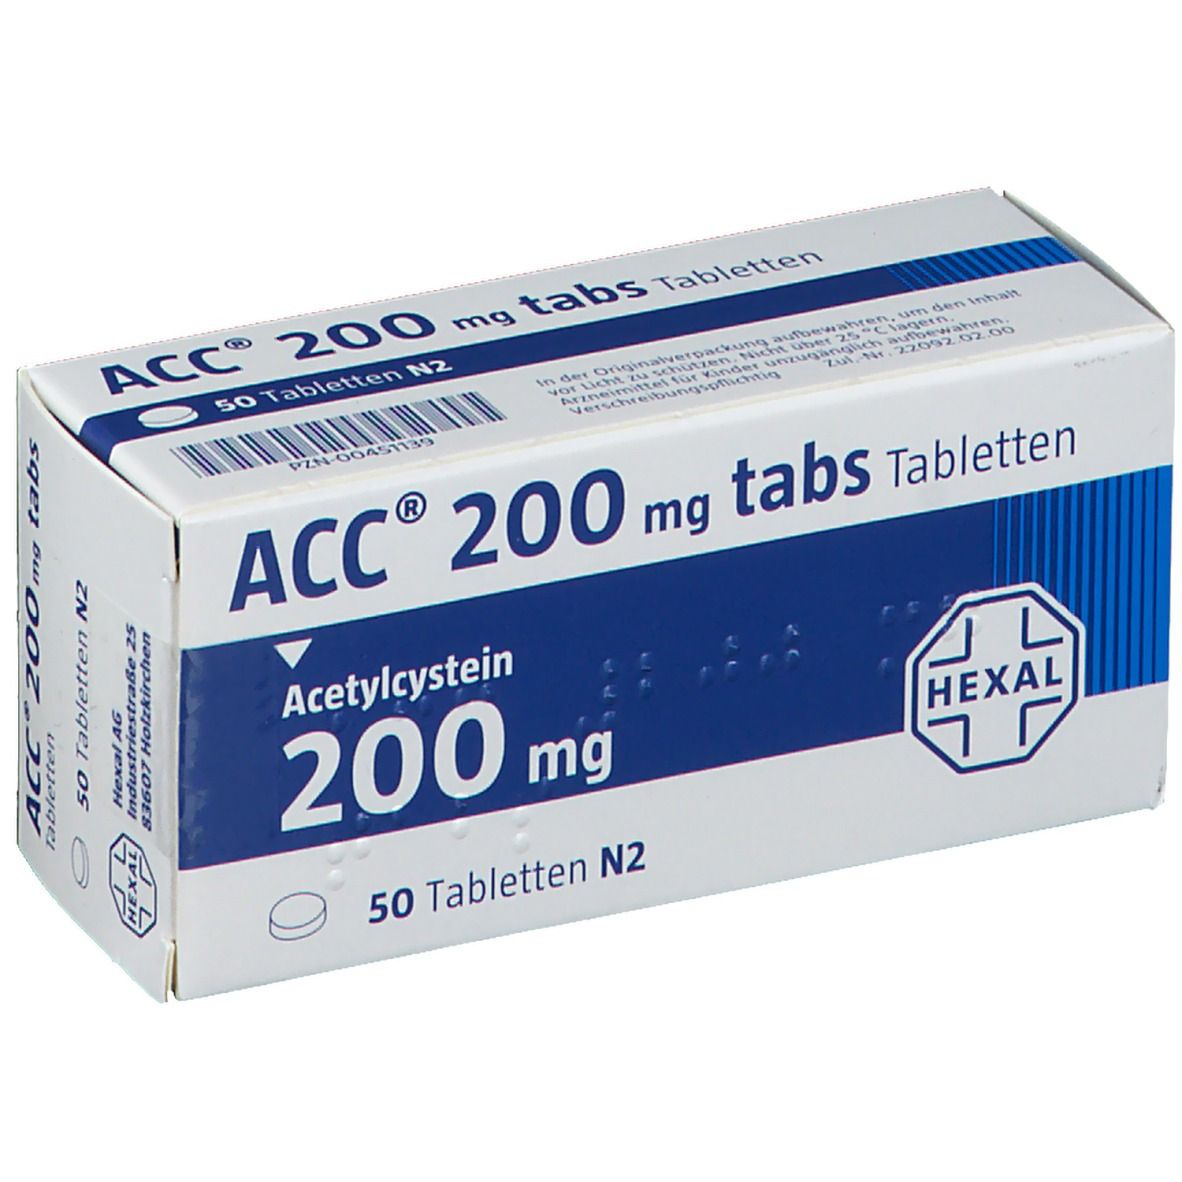 ACC® 200 mg tabs